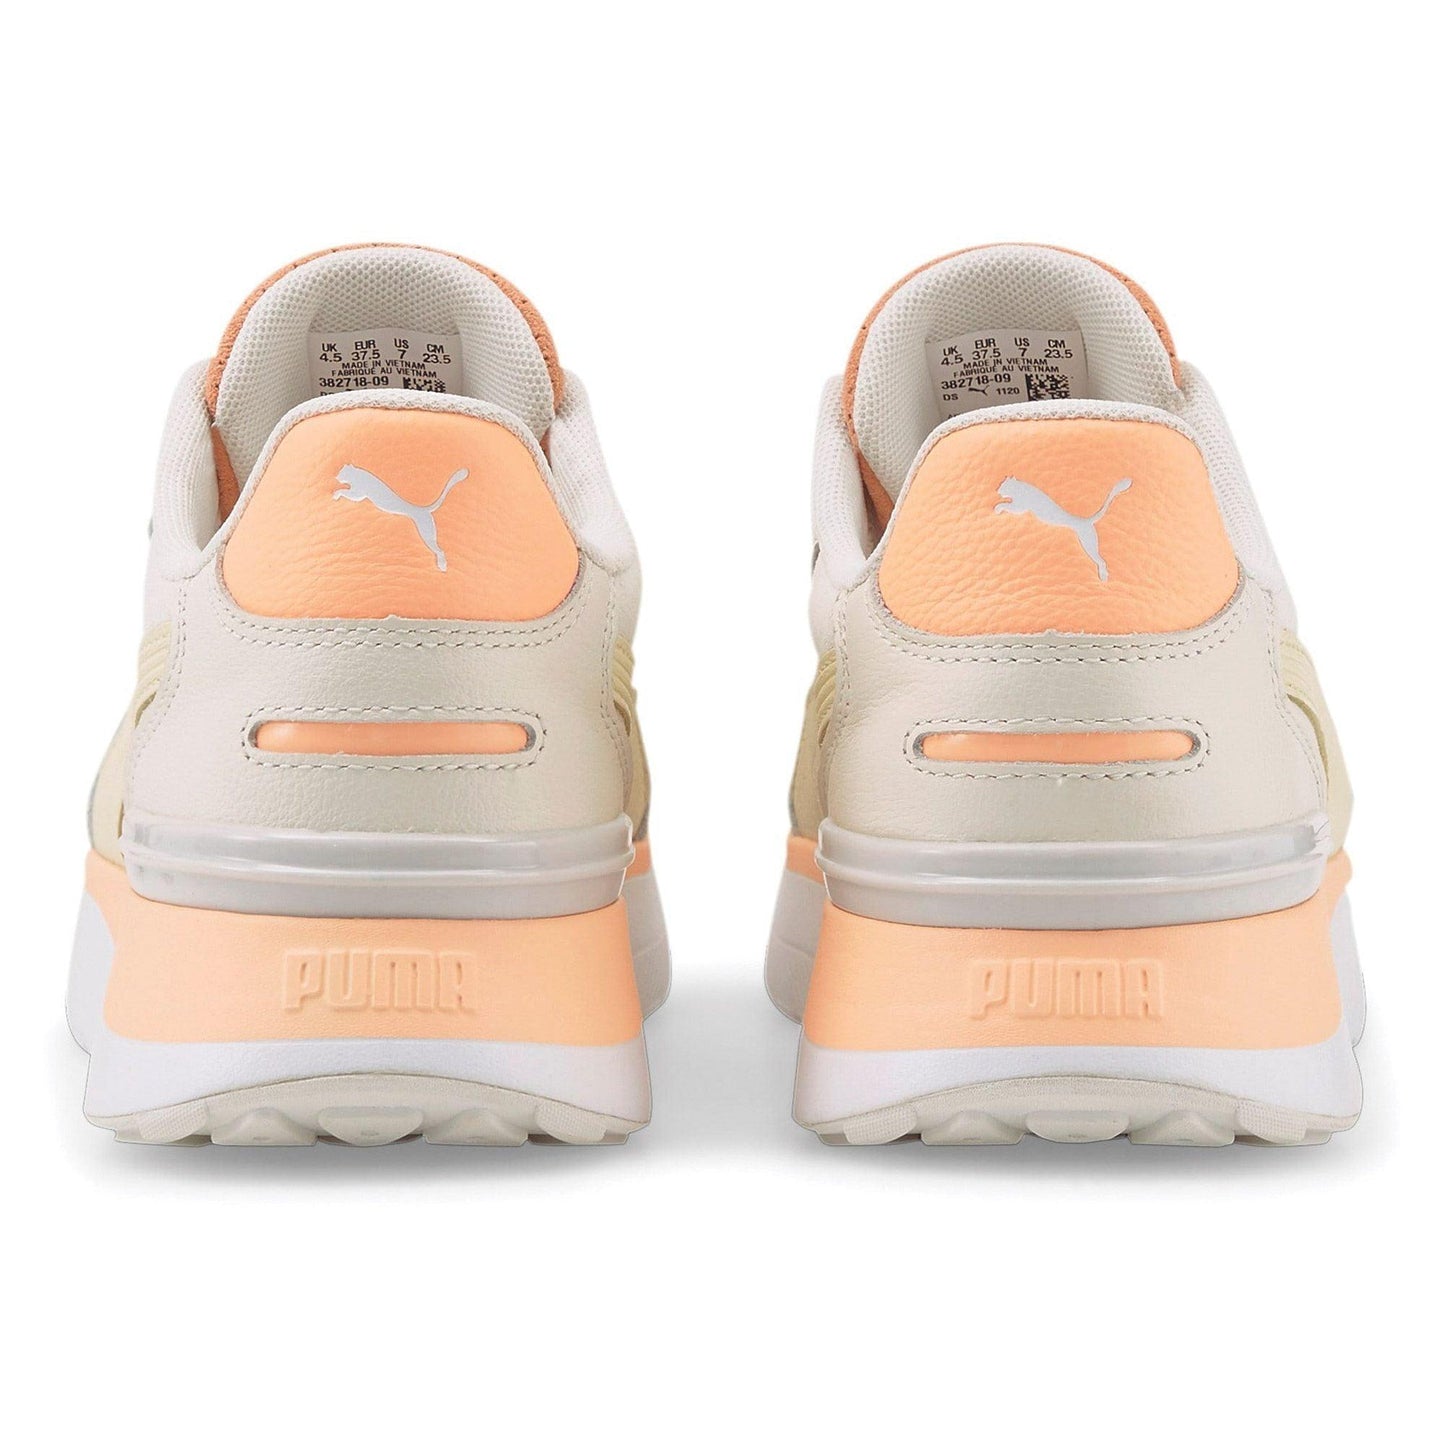 PUMA - נעלי ספורט לנשים R78 Voyage Premium בצבע בז וכתום - MASHBIR//365